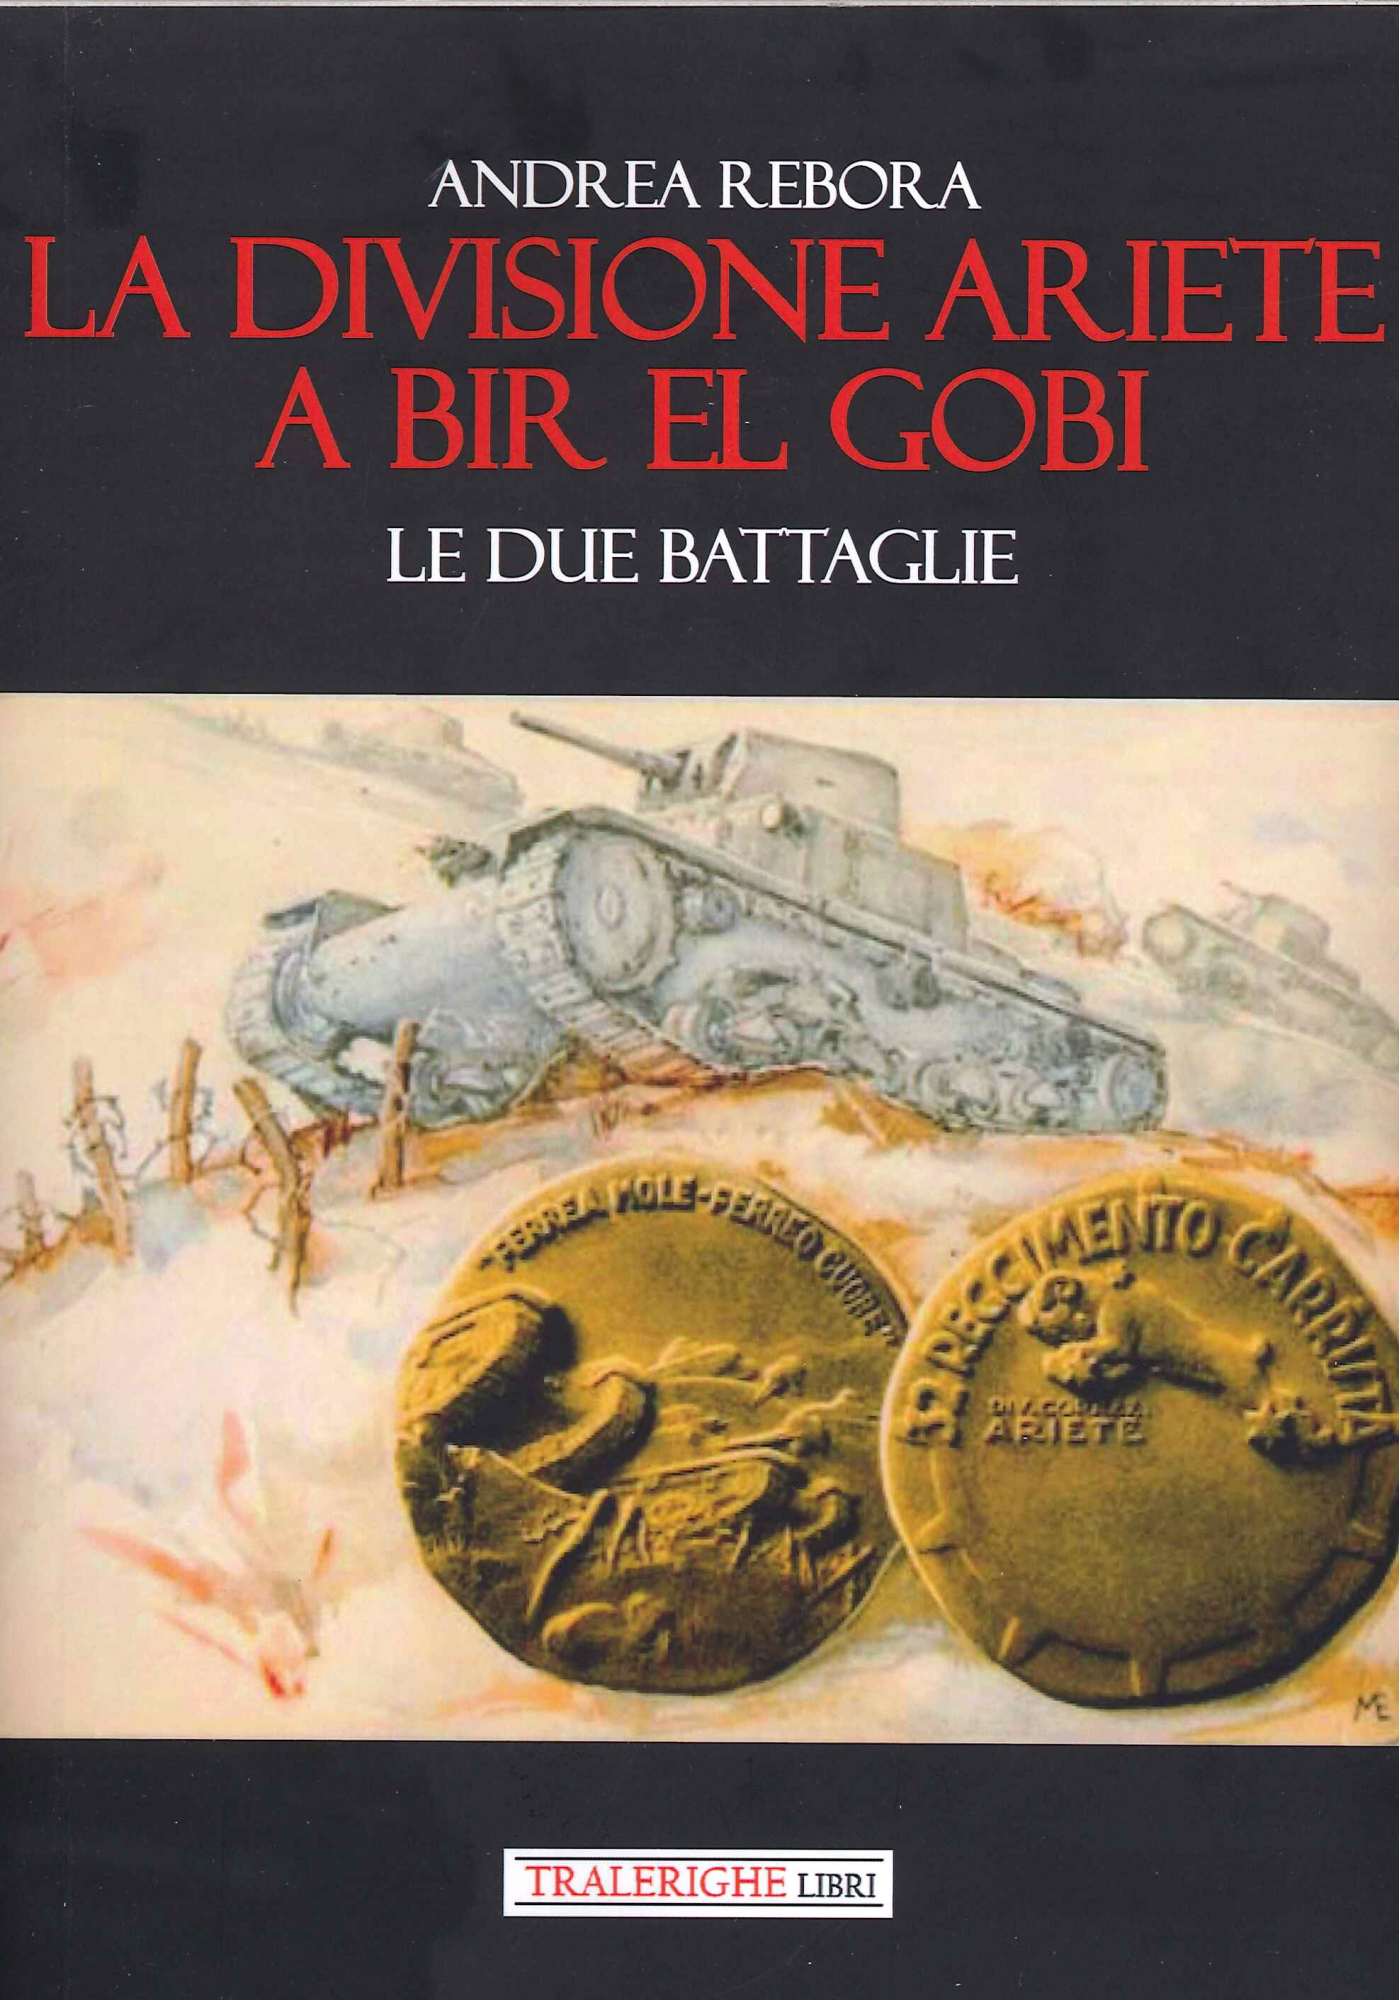 Libri Rebora Andrea - La Divisione Ariete A Bir El Gobi. Le Due Battaglie NUOVO SIGILLATO, EDIZIONE DEL 05/02/2021 SUBITO DISPONIBILE